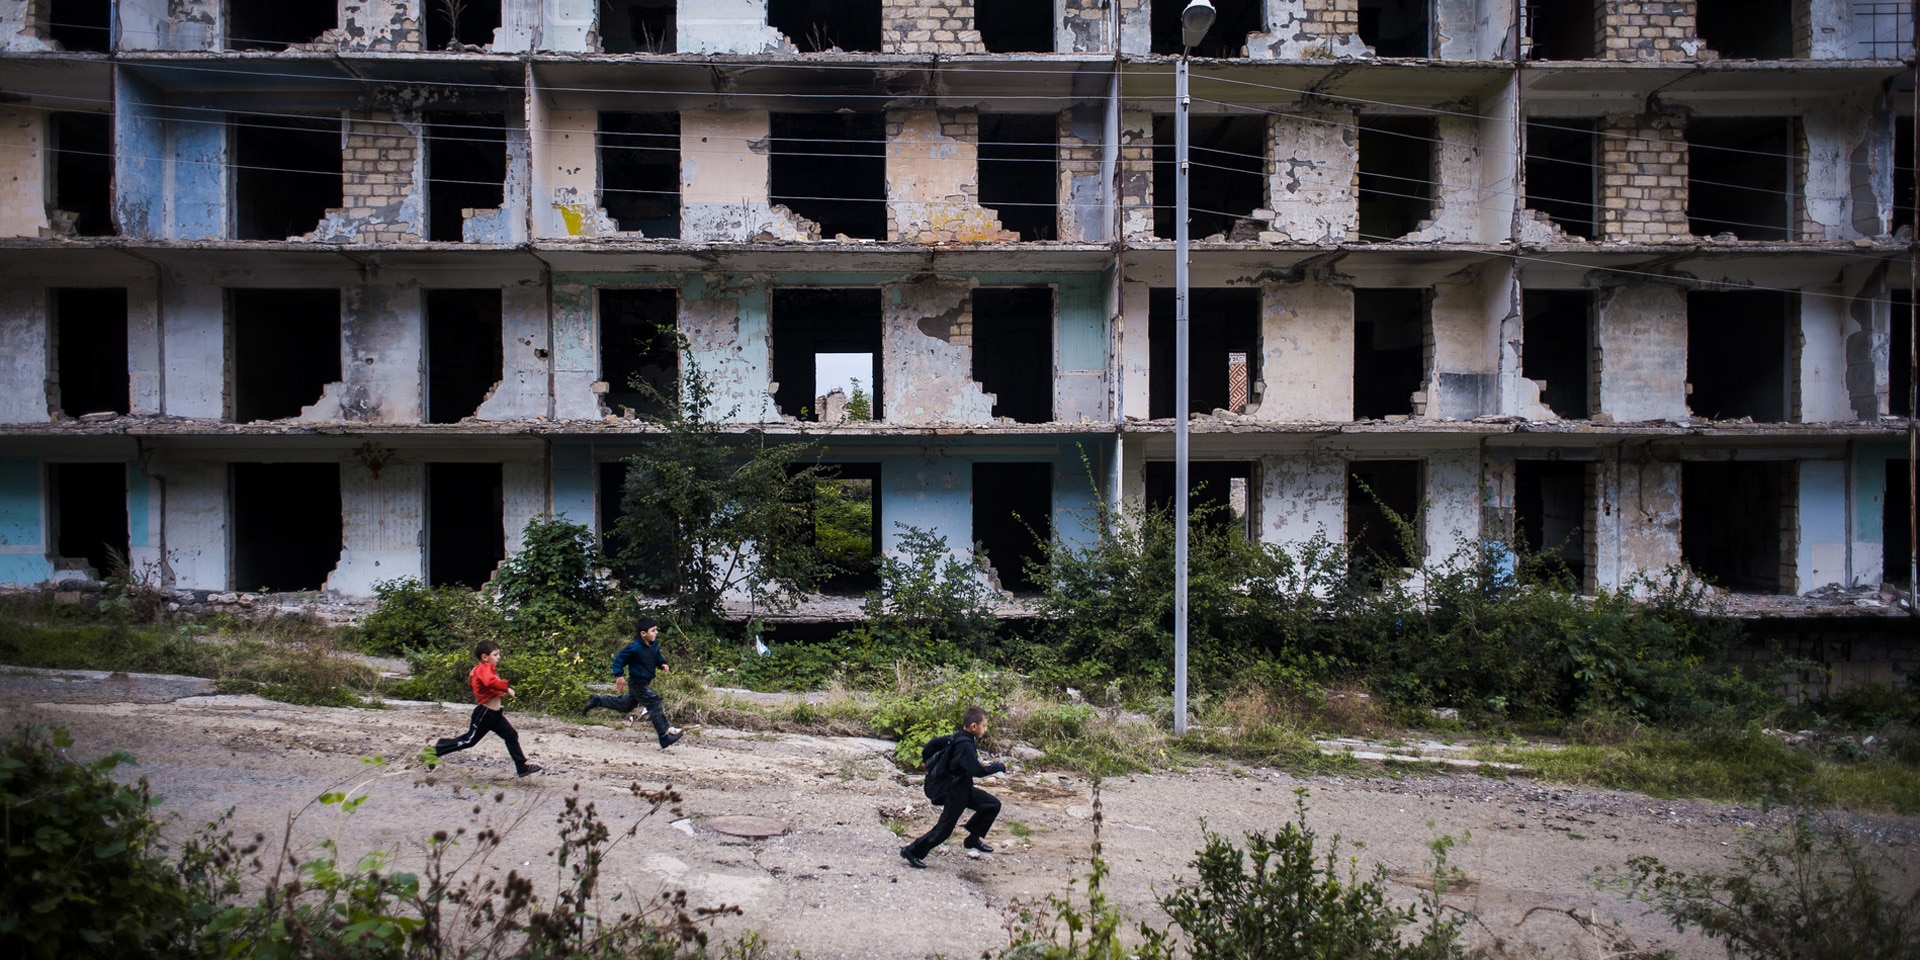 Nagorny-Karabach: Kinder laufen an einem im Krieg zerstörten Gebäude vorbei.